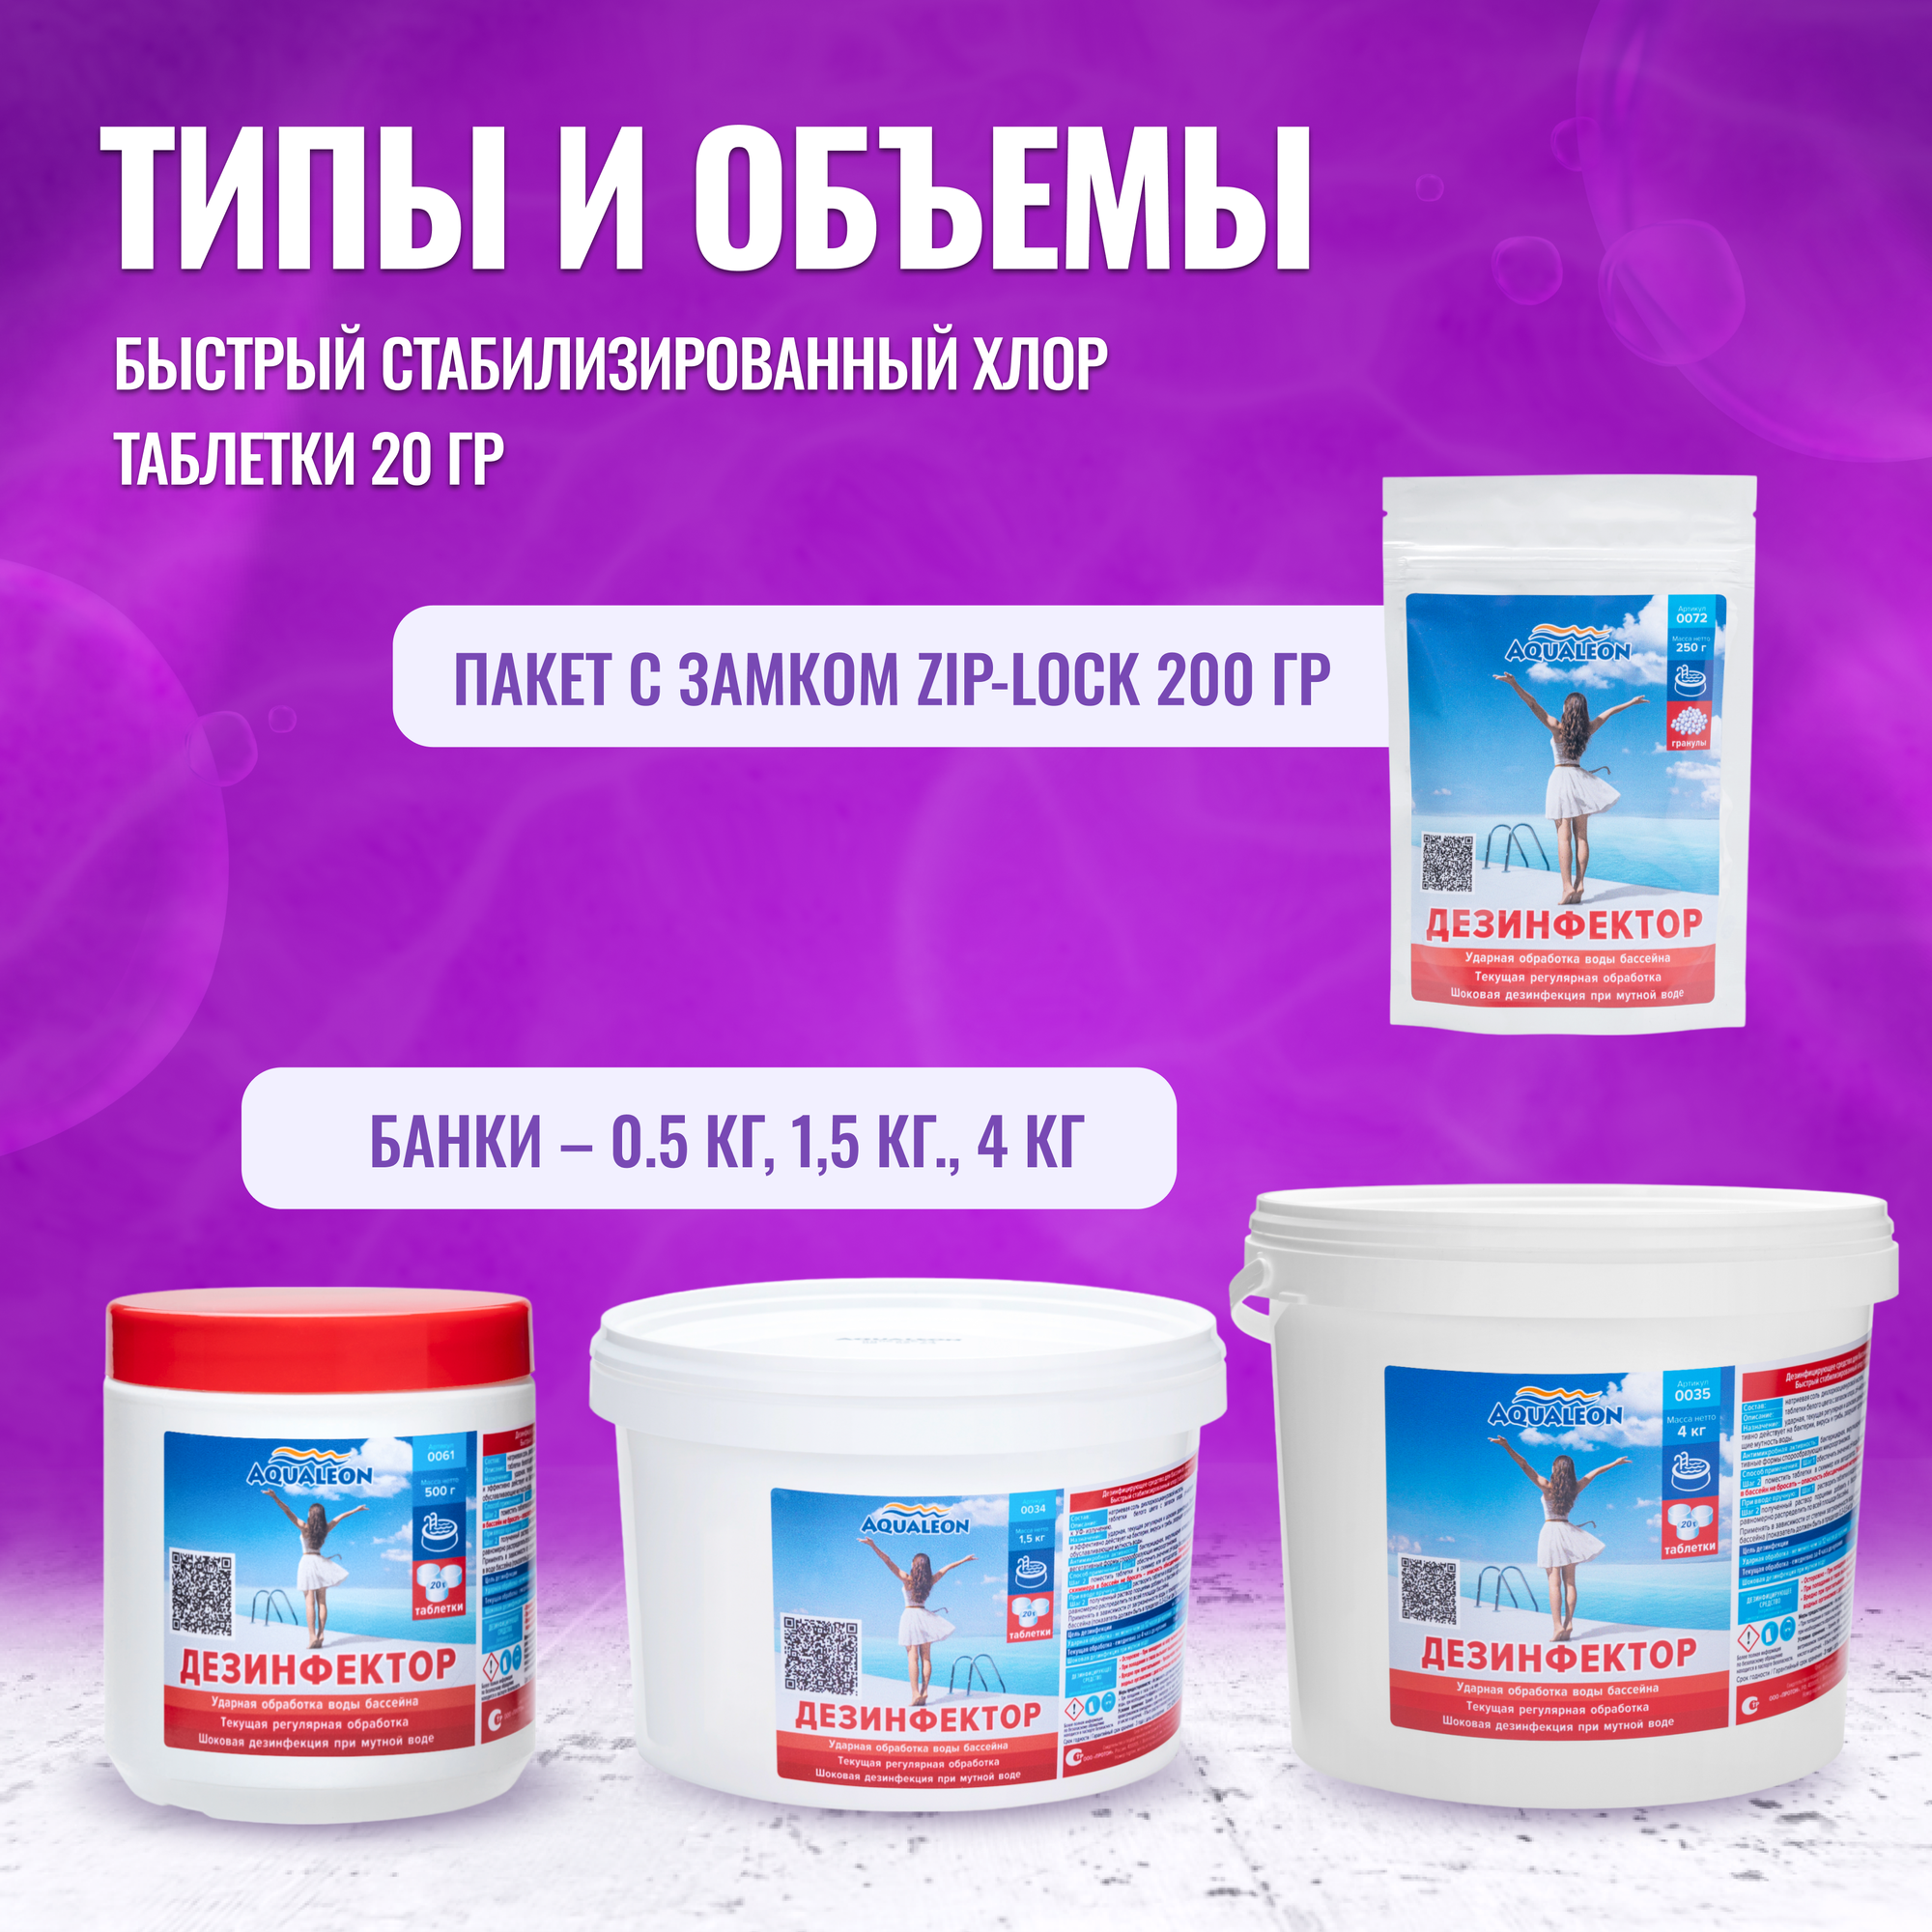 Ударный хлор БСХ для бассейна Aqualeon 1,5 кг в таблетках по 20 гр. (быстрый стабилизированный хлор) / Дезинфектор